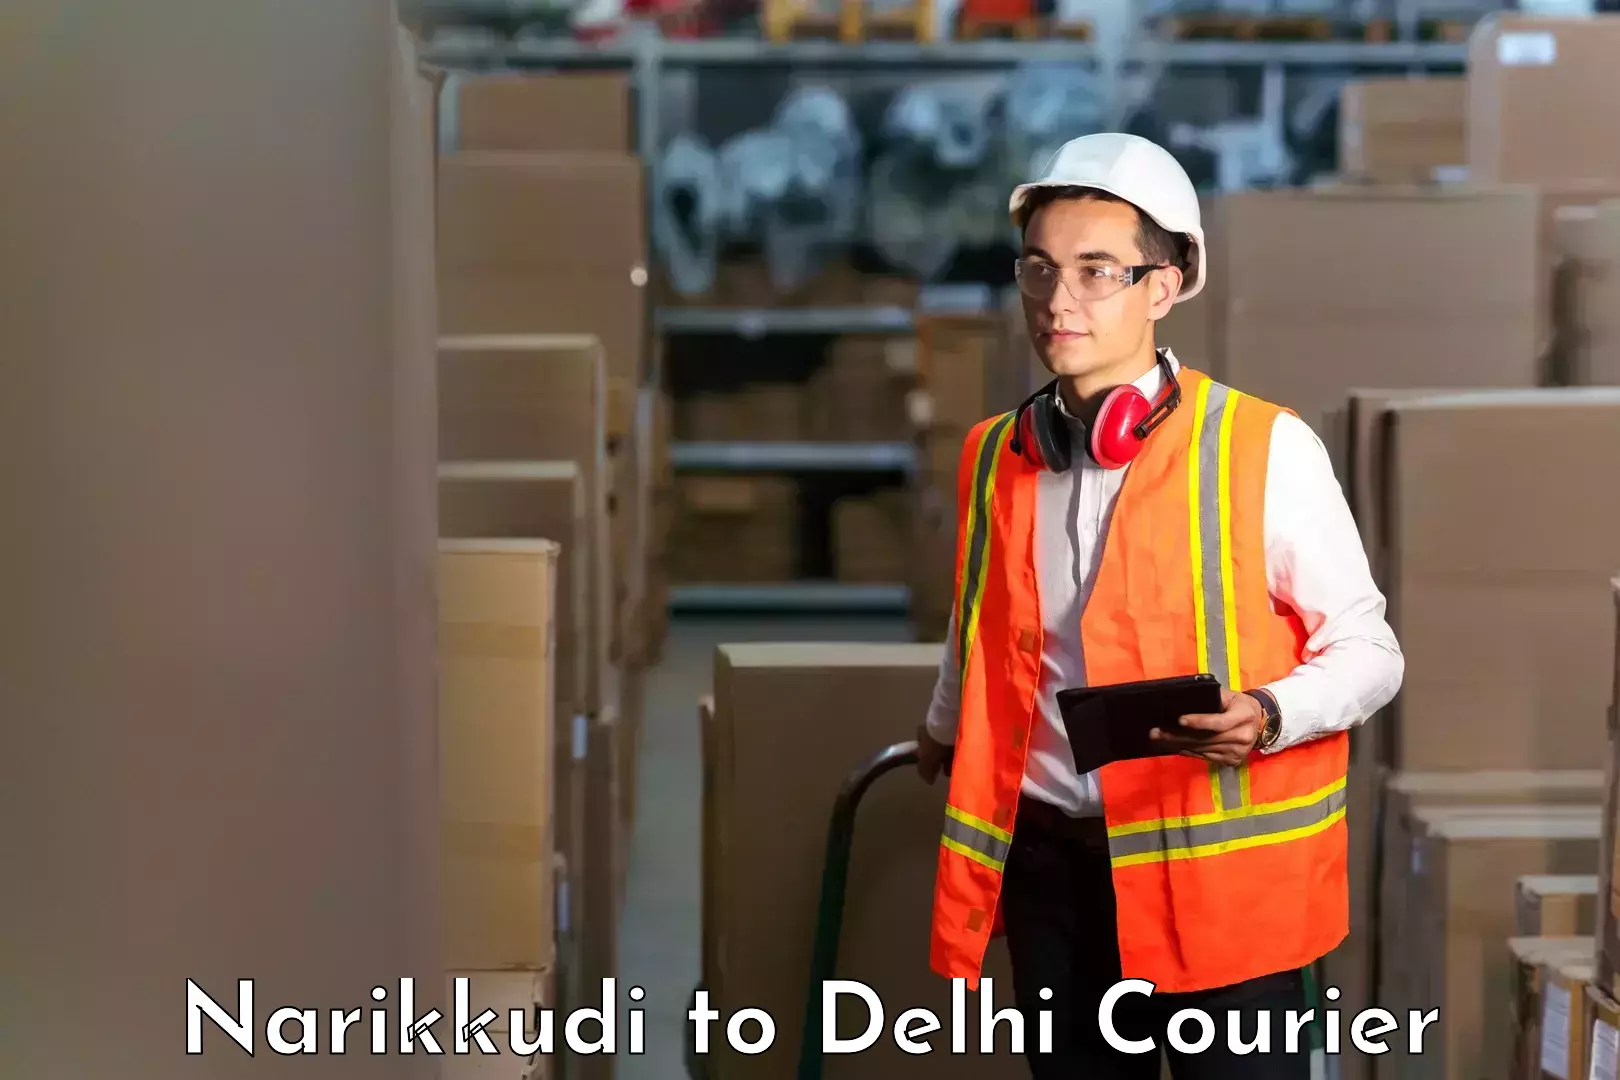 Comprehensive logistics solutions Narikkudi to Delhi